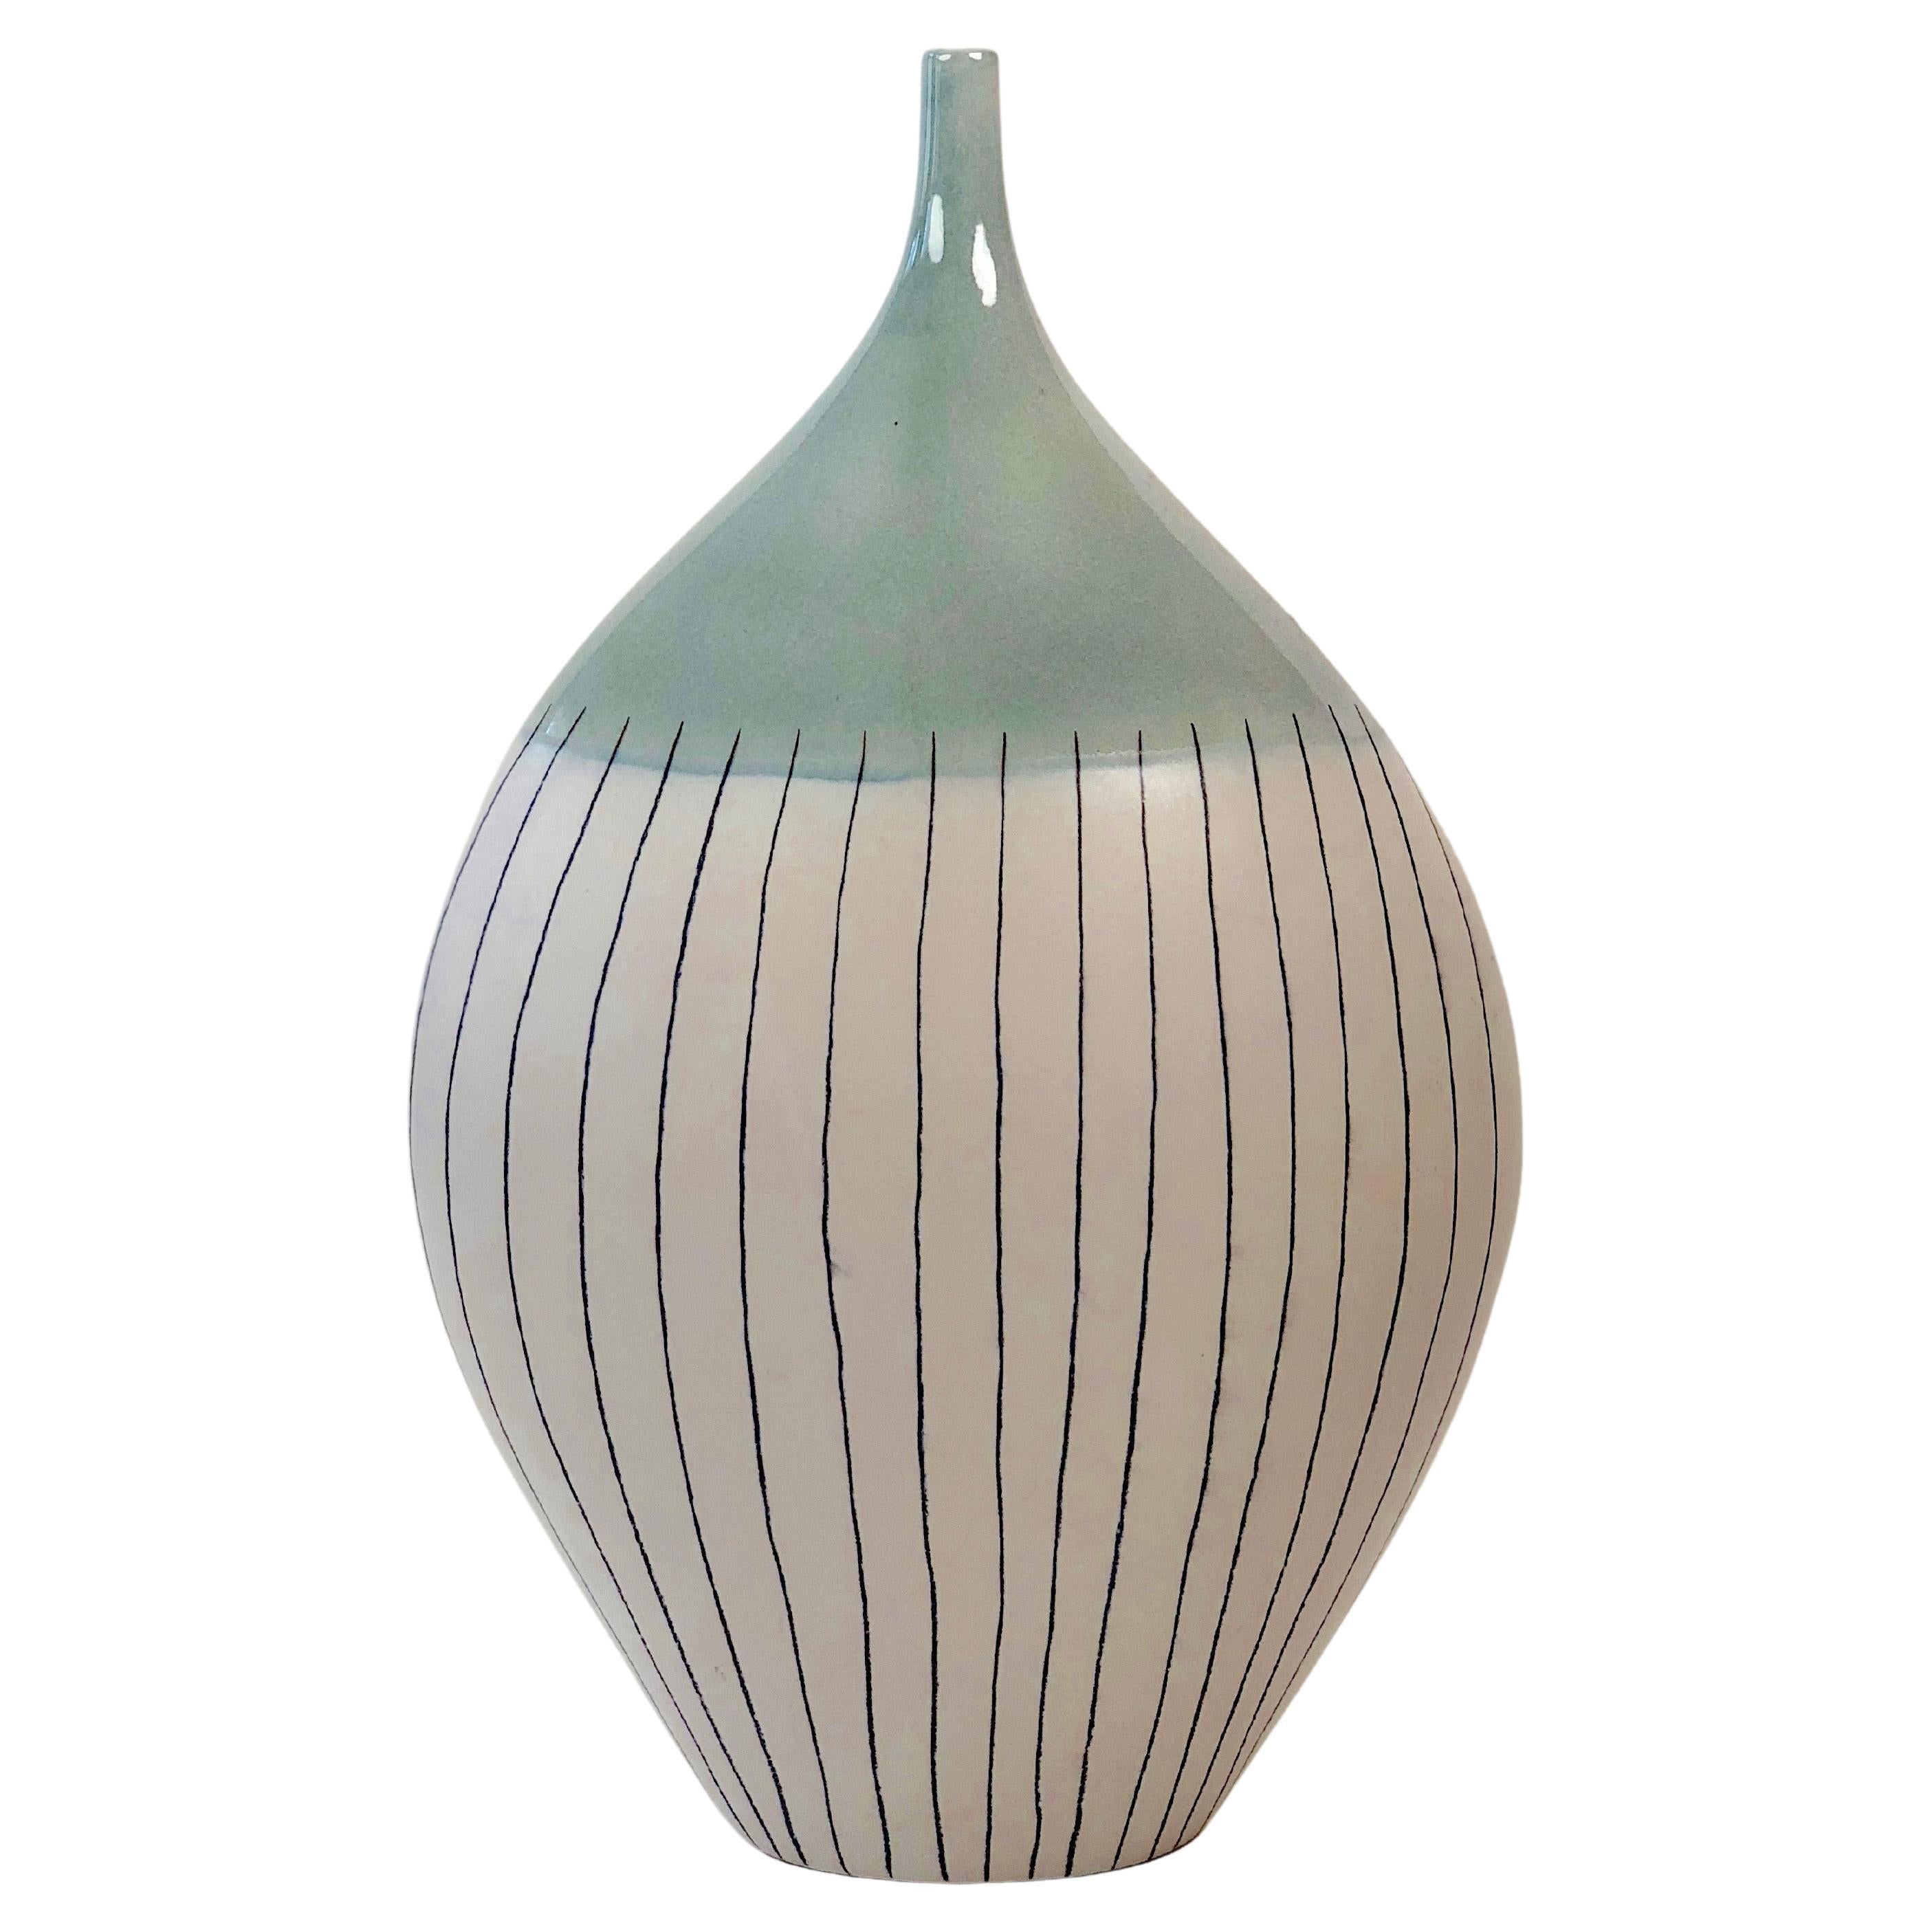 Große Vase aus Keramik im minimalistischen Stil der 60er Jahre